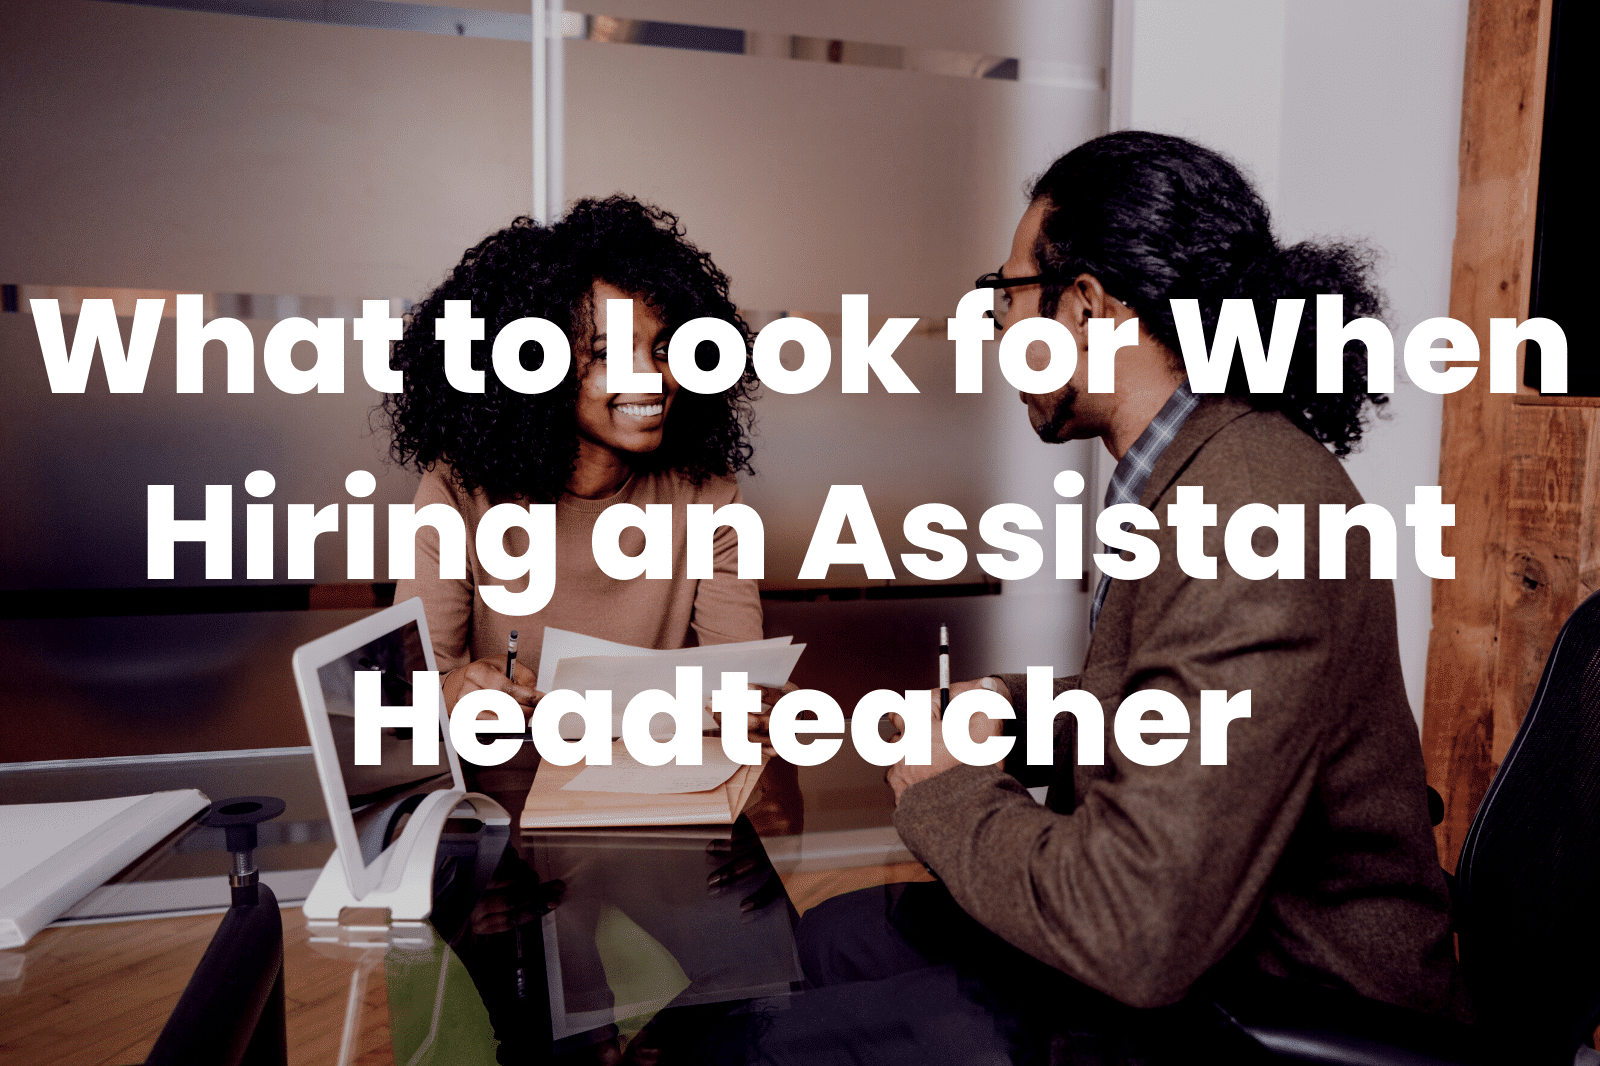 Hiring an Assistant Headteacher